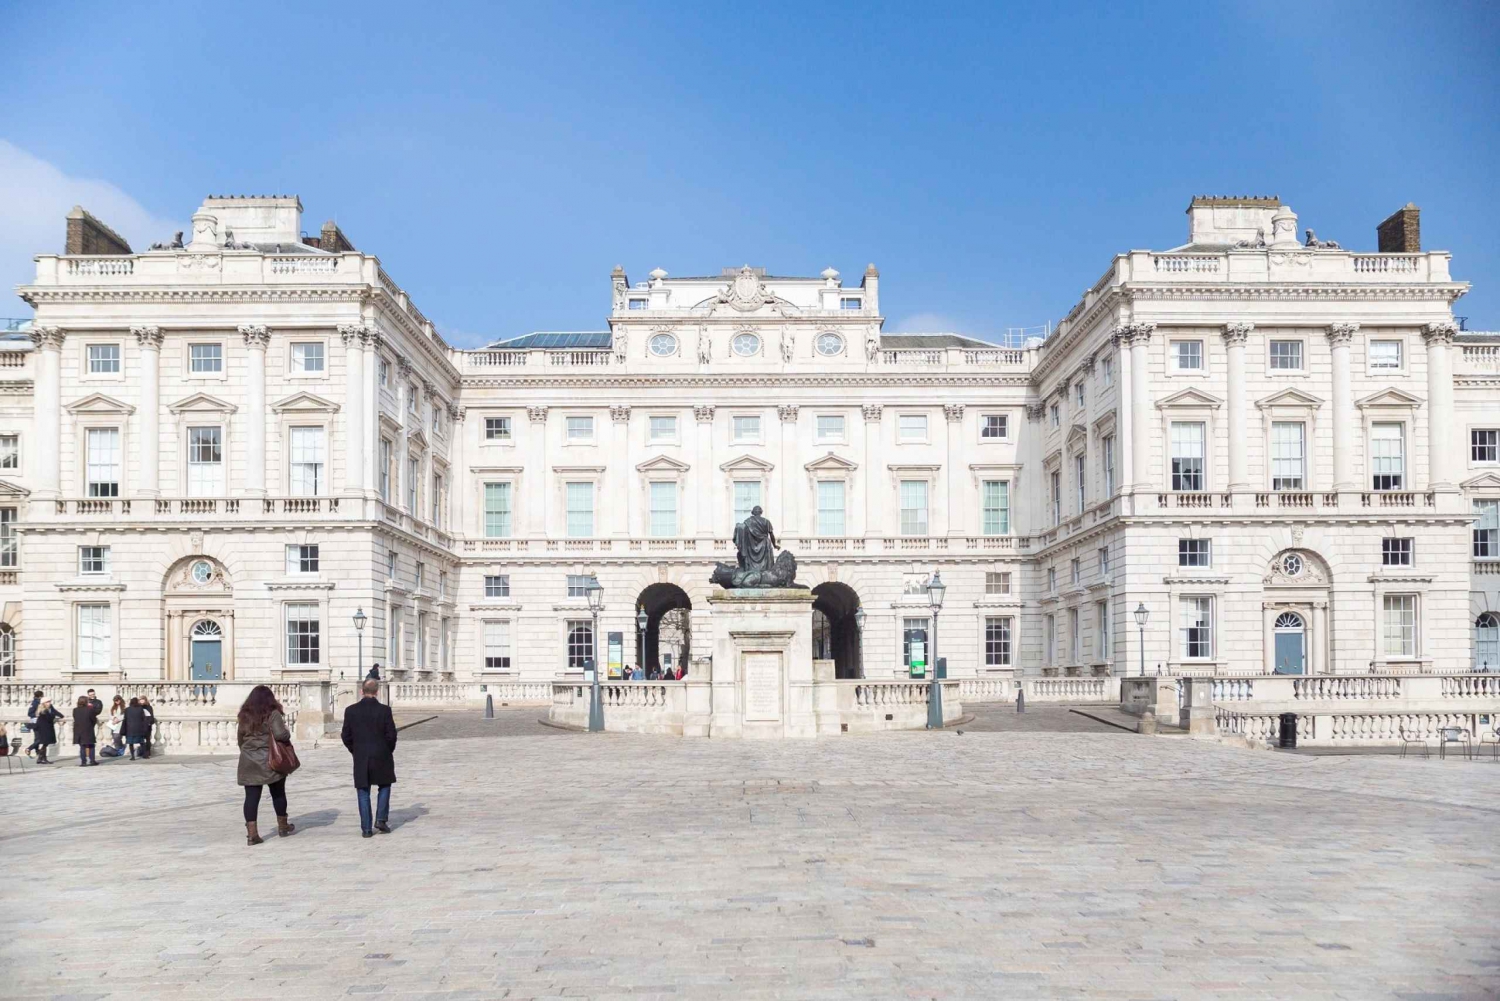 Londen: toegangsticket voor de Courtauld Gallery in Somerset House